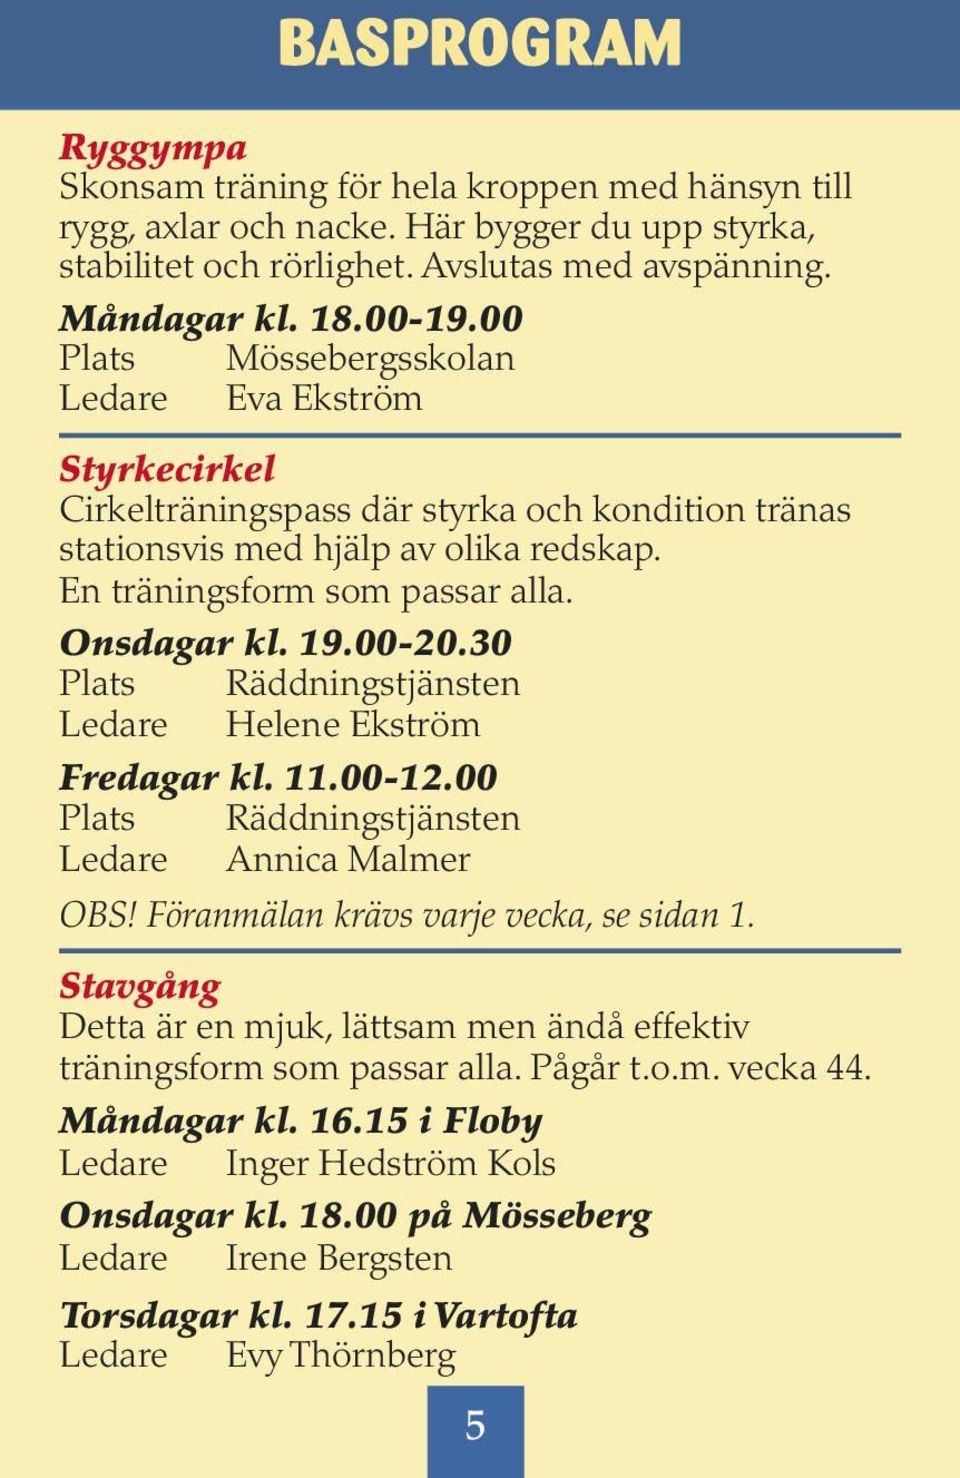 Onsdagar kl. 19.00-20.30 Ledare Helene Ekström Fredagar kl. 11.00-12.00 Ledare Annica Malmer OBS! Föranmälan krävs varje vecka, se sidan 1.